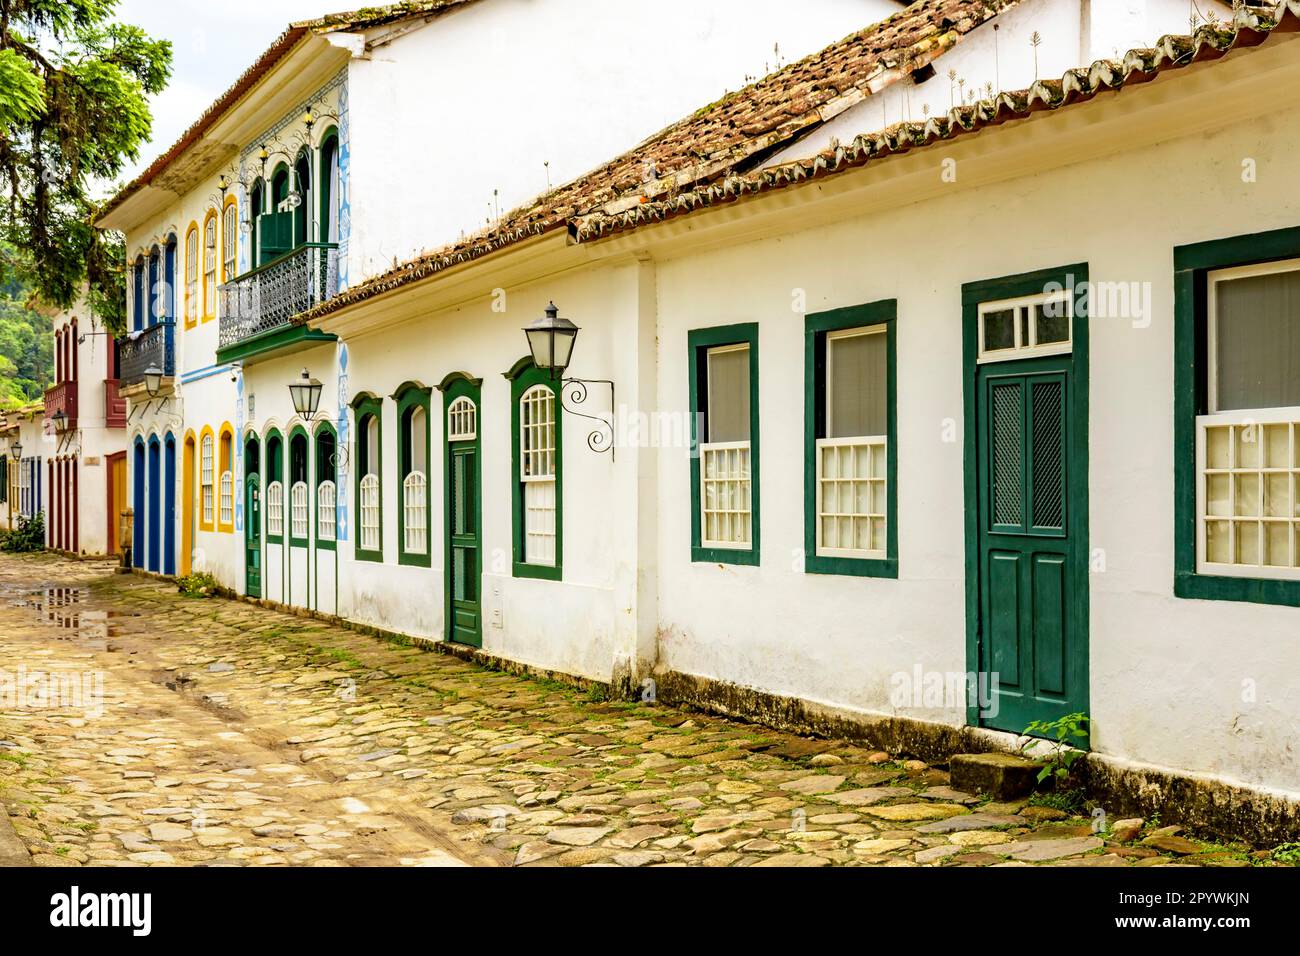 Rua bucolica com calcamento de pedras e casas historicas em estilo colonial da epoca do imperio na cidade de Paraty no litoral do Rio de Janeiro Stock Photo